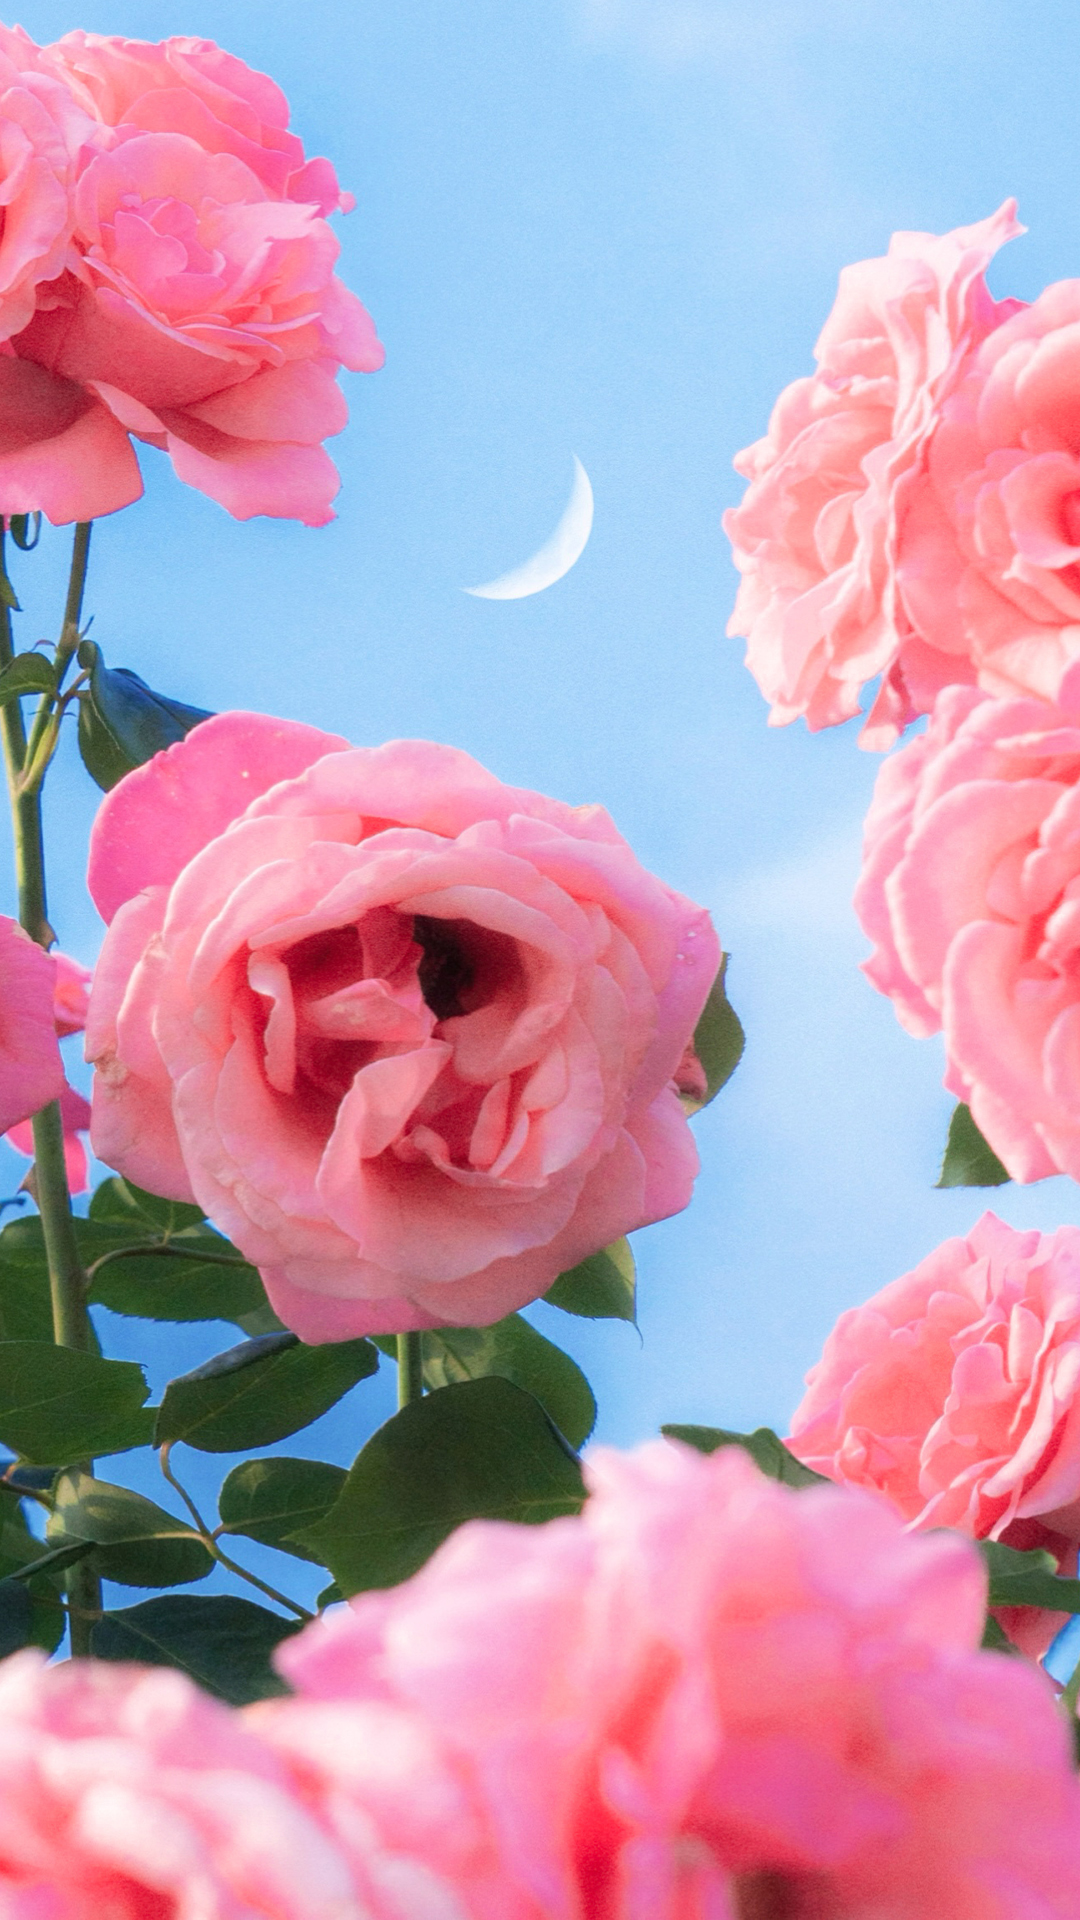 鲜艳的玫瑰花图片手机壁纸 蓝天下的玫瑰花手机壁纸 三千图片网